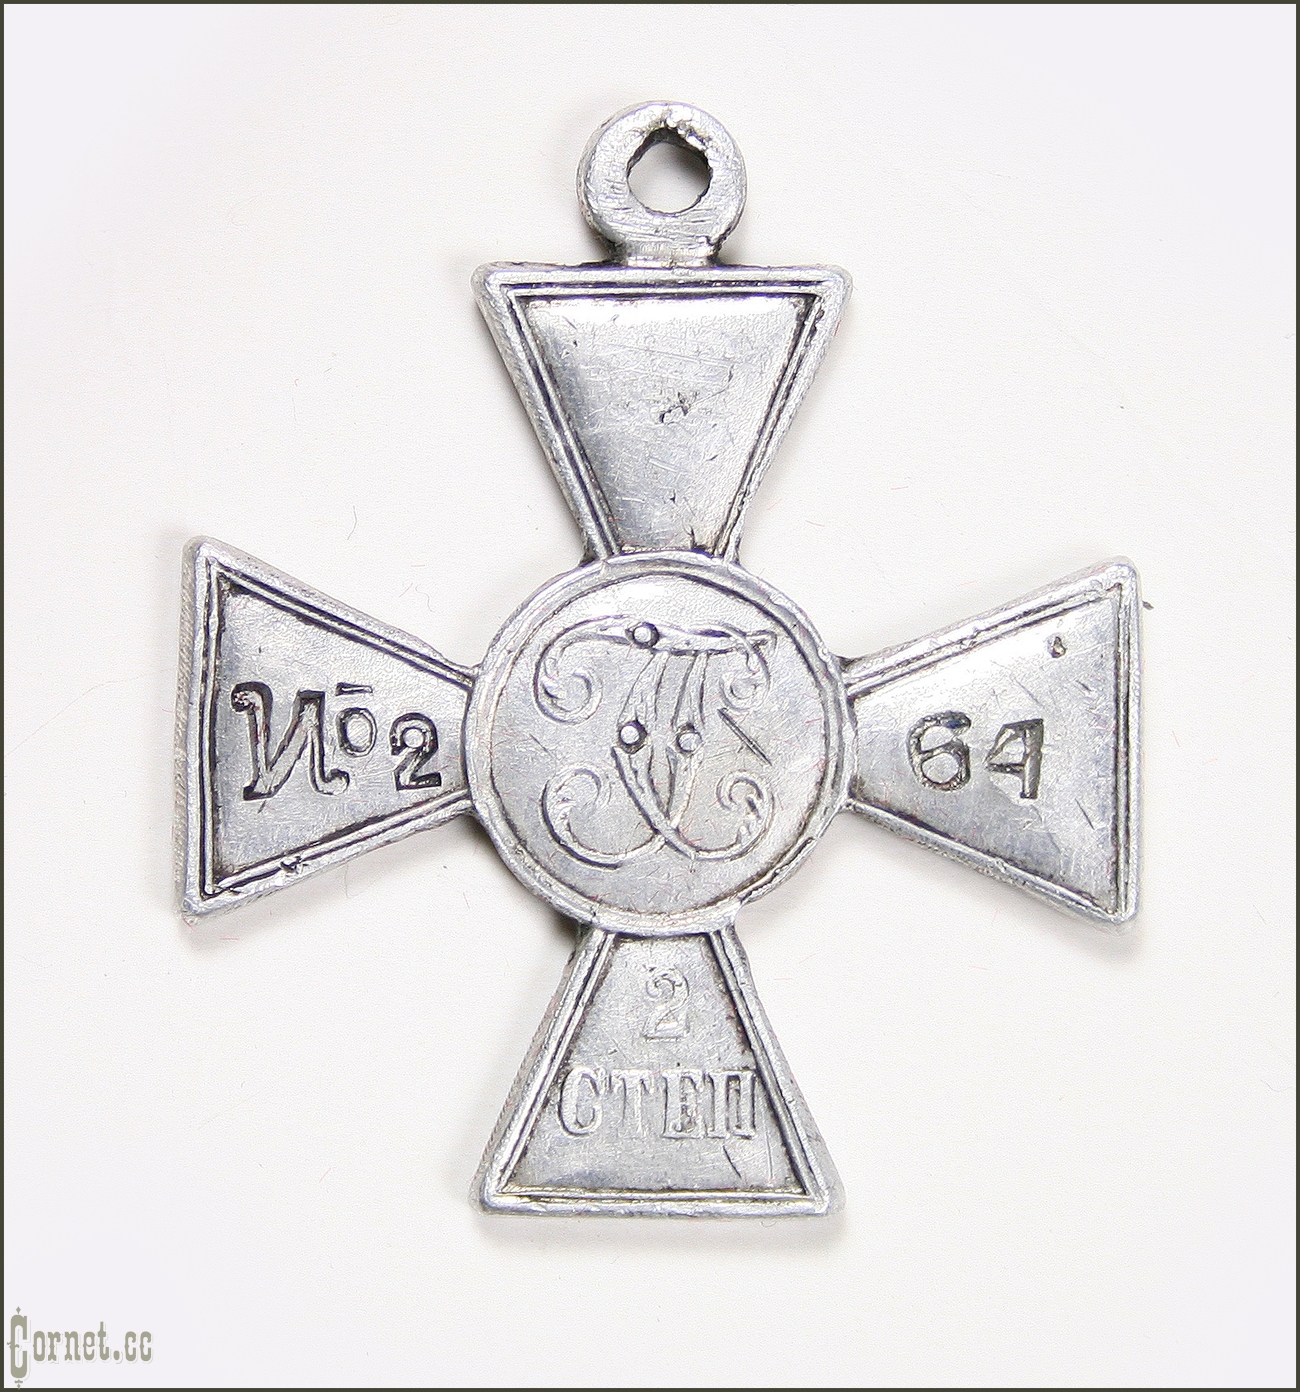 Георгиевский крест 2-й степени Север России.